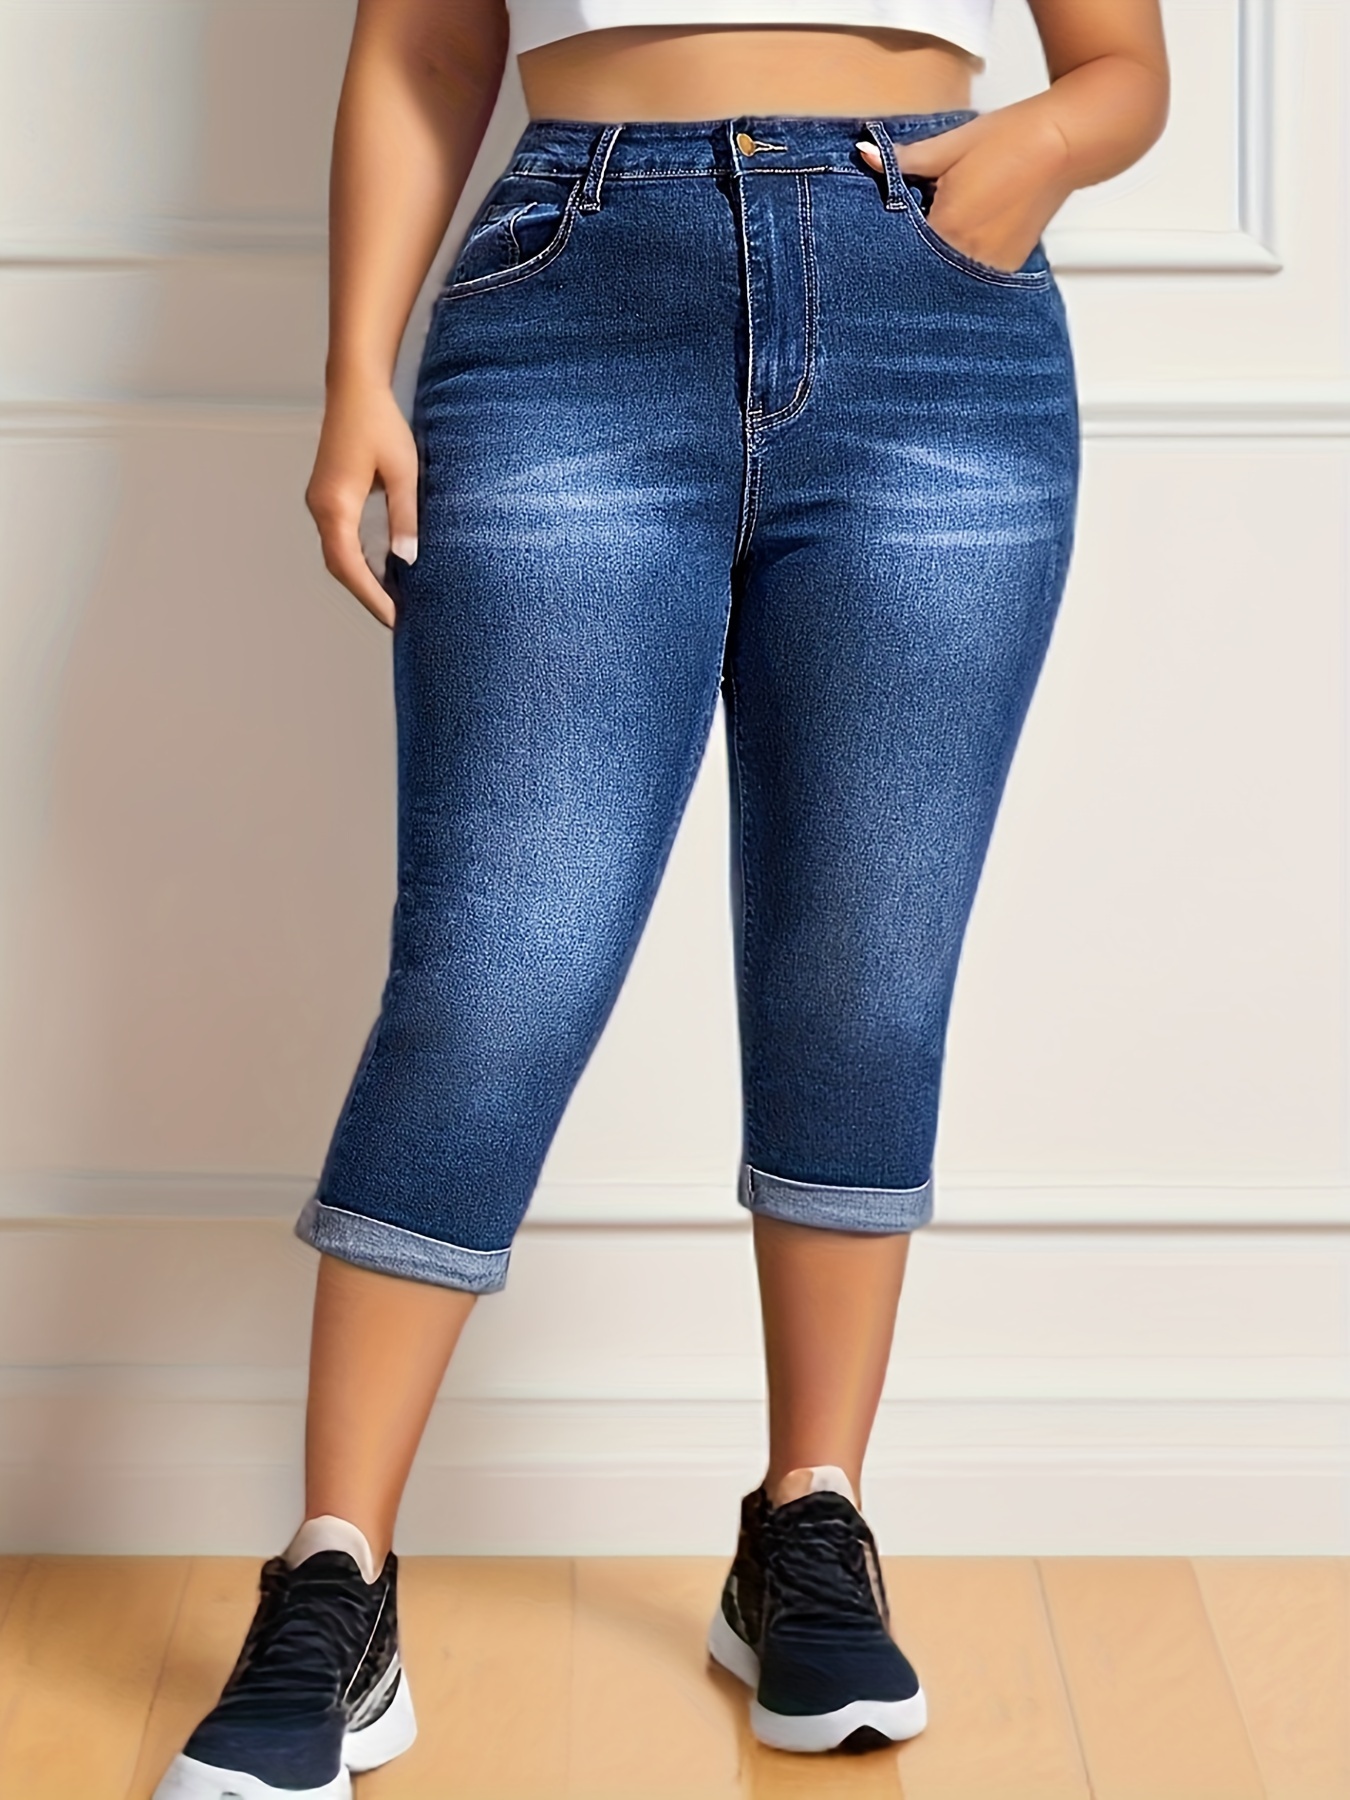 Capris Plus Size Jeans 